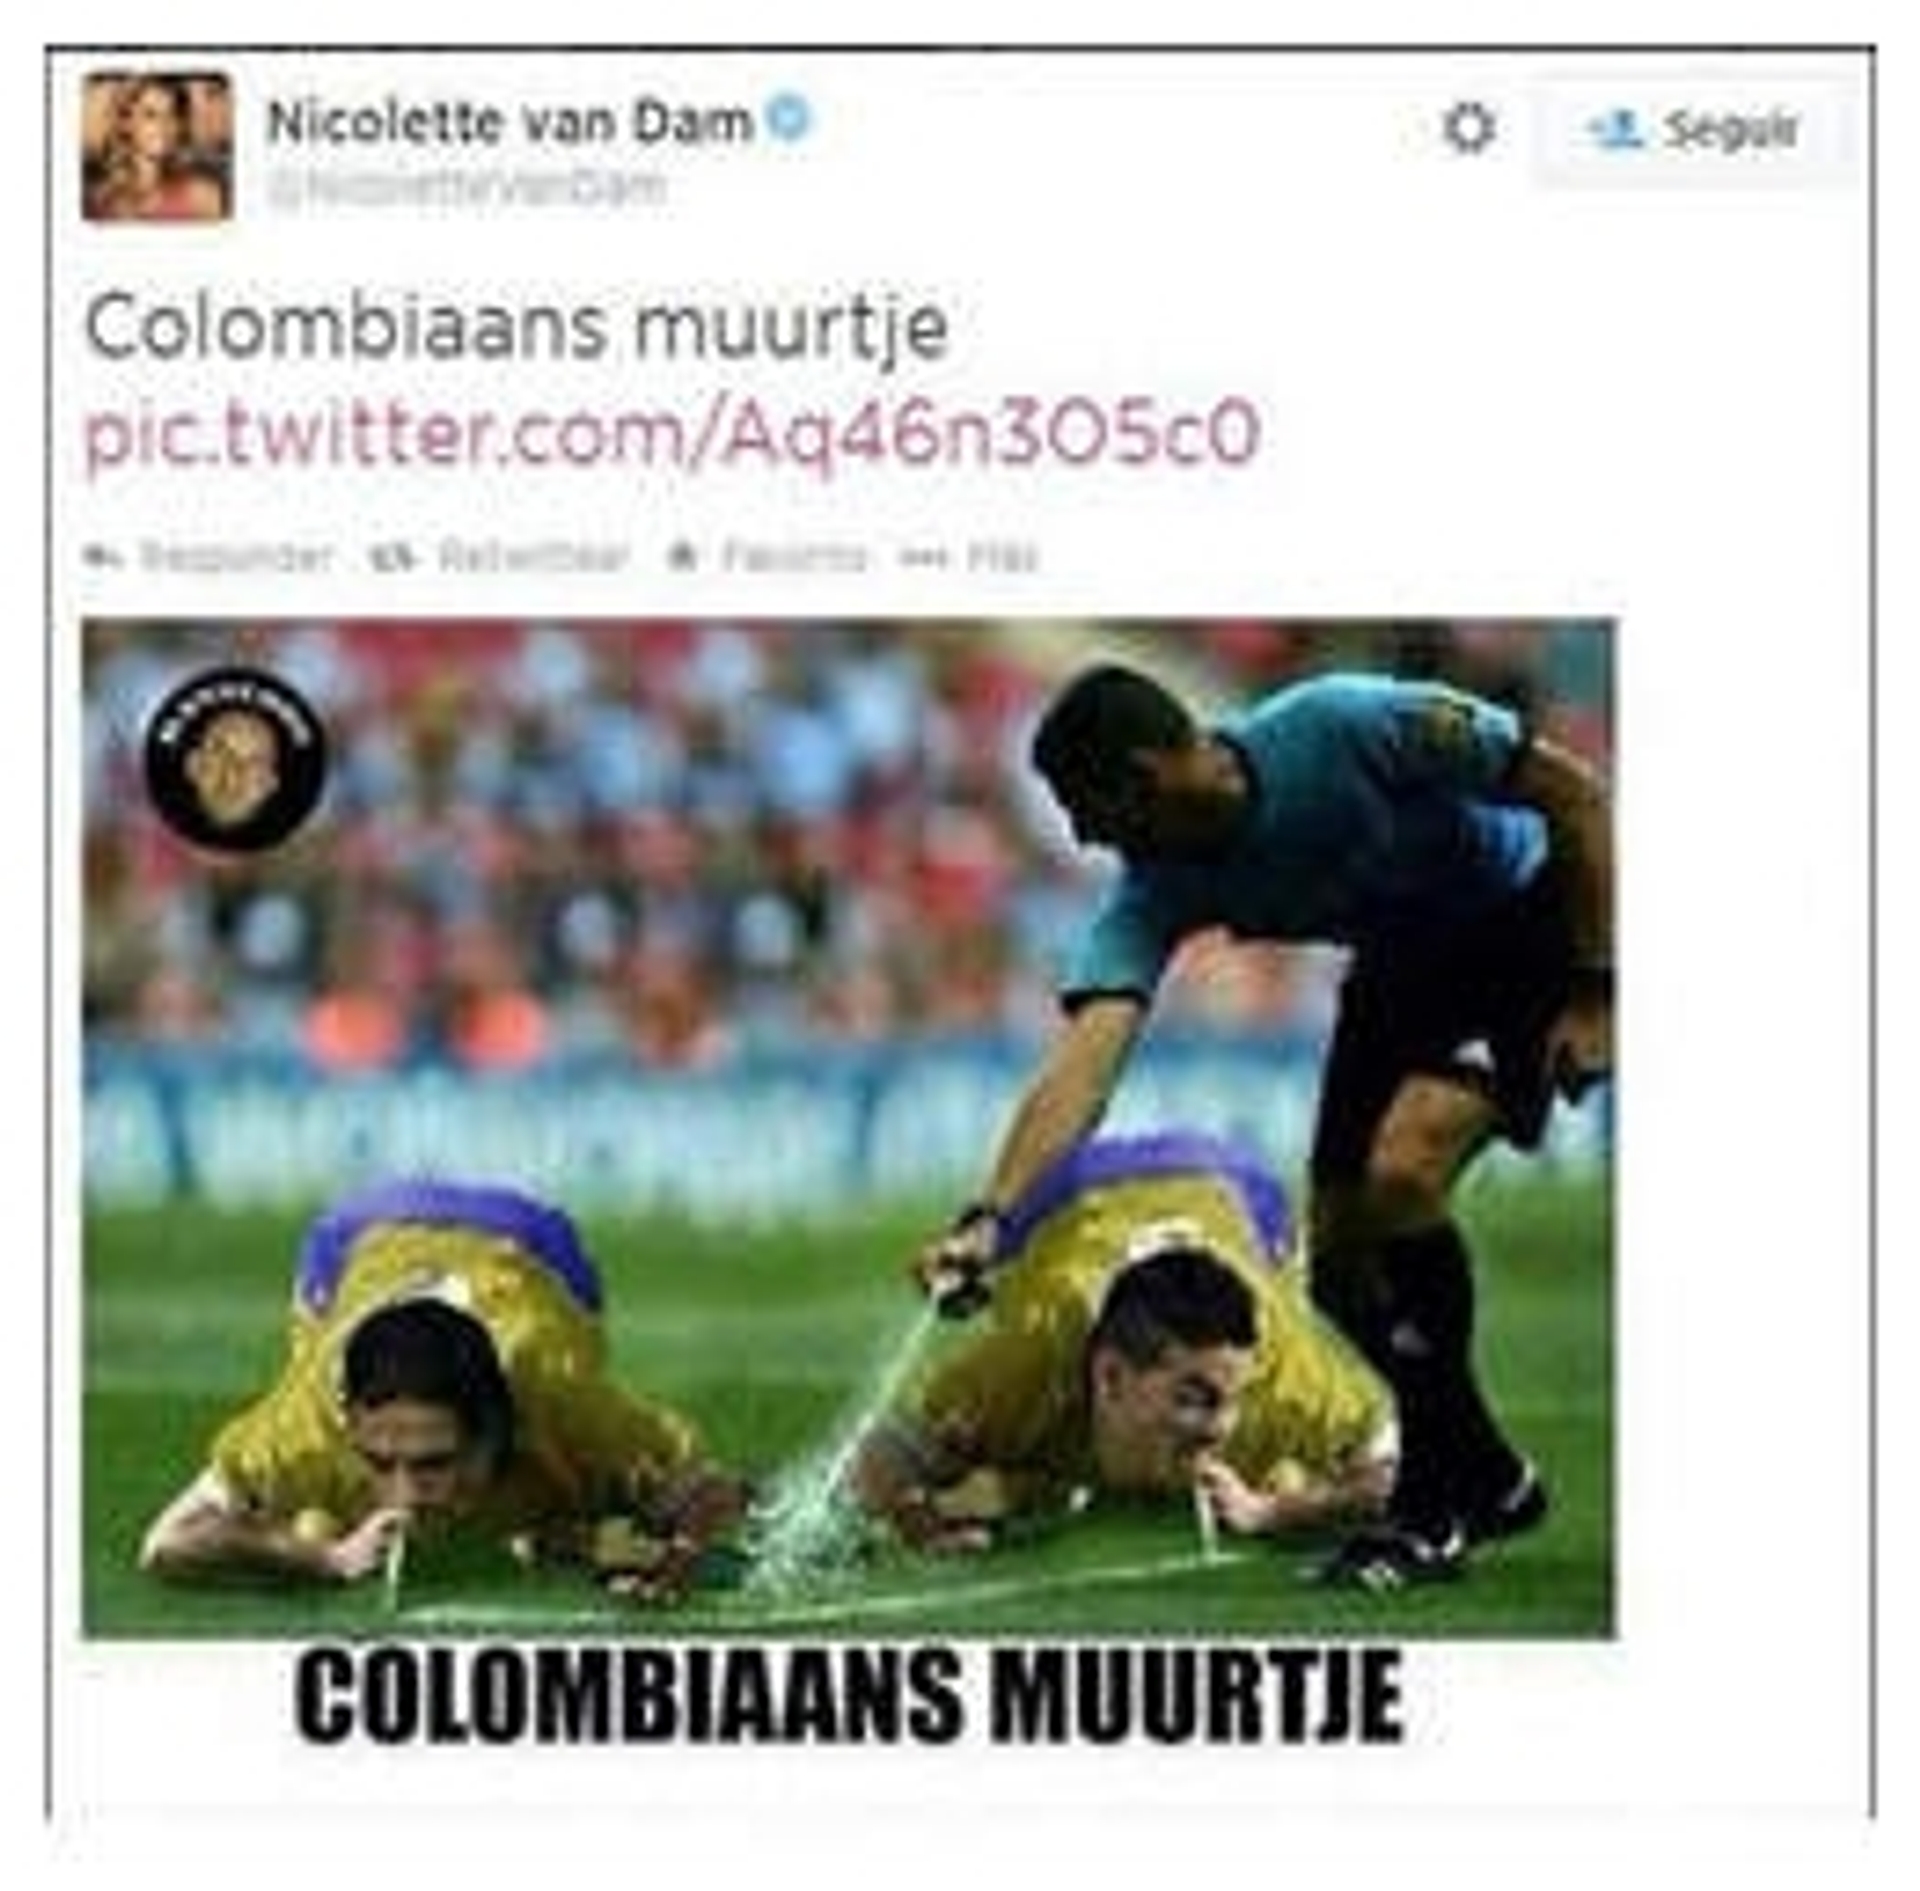 colombiaans_muurtje